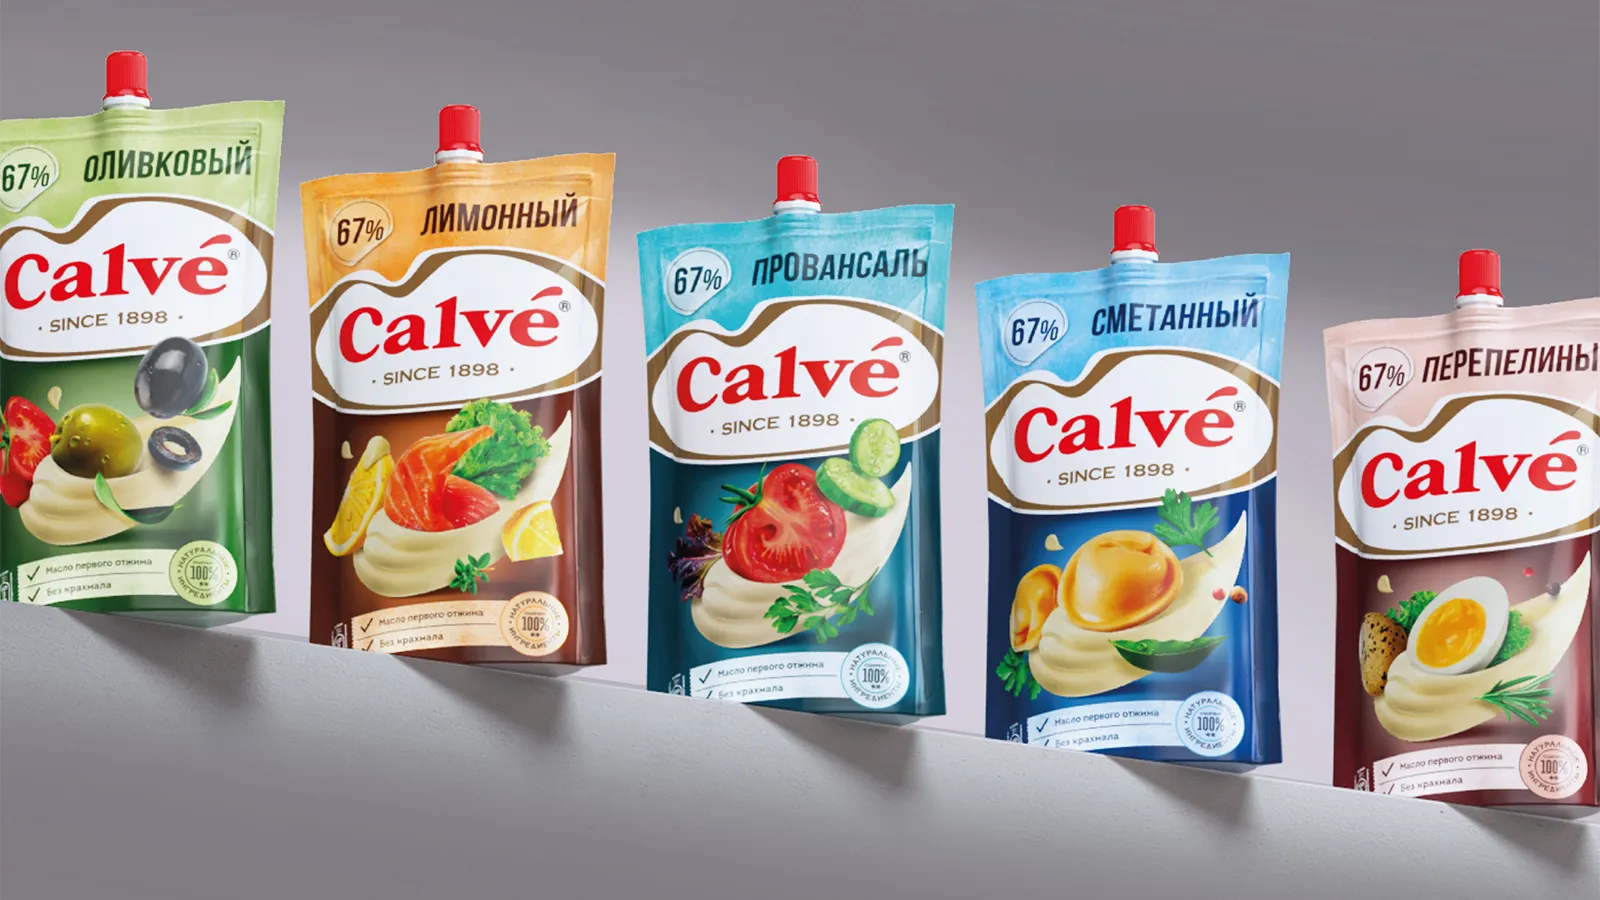 Calvé 袋装蛋黄酱酱汁调味料花生酱调味品包装设计，突出品牌logo